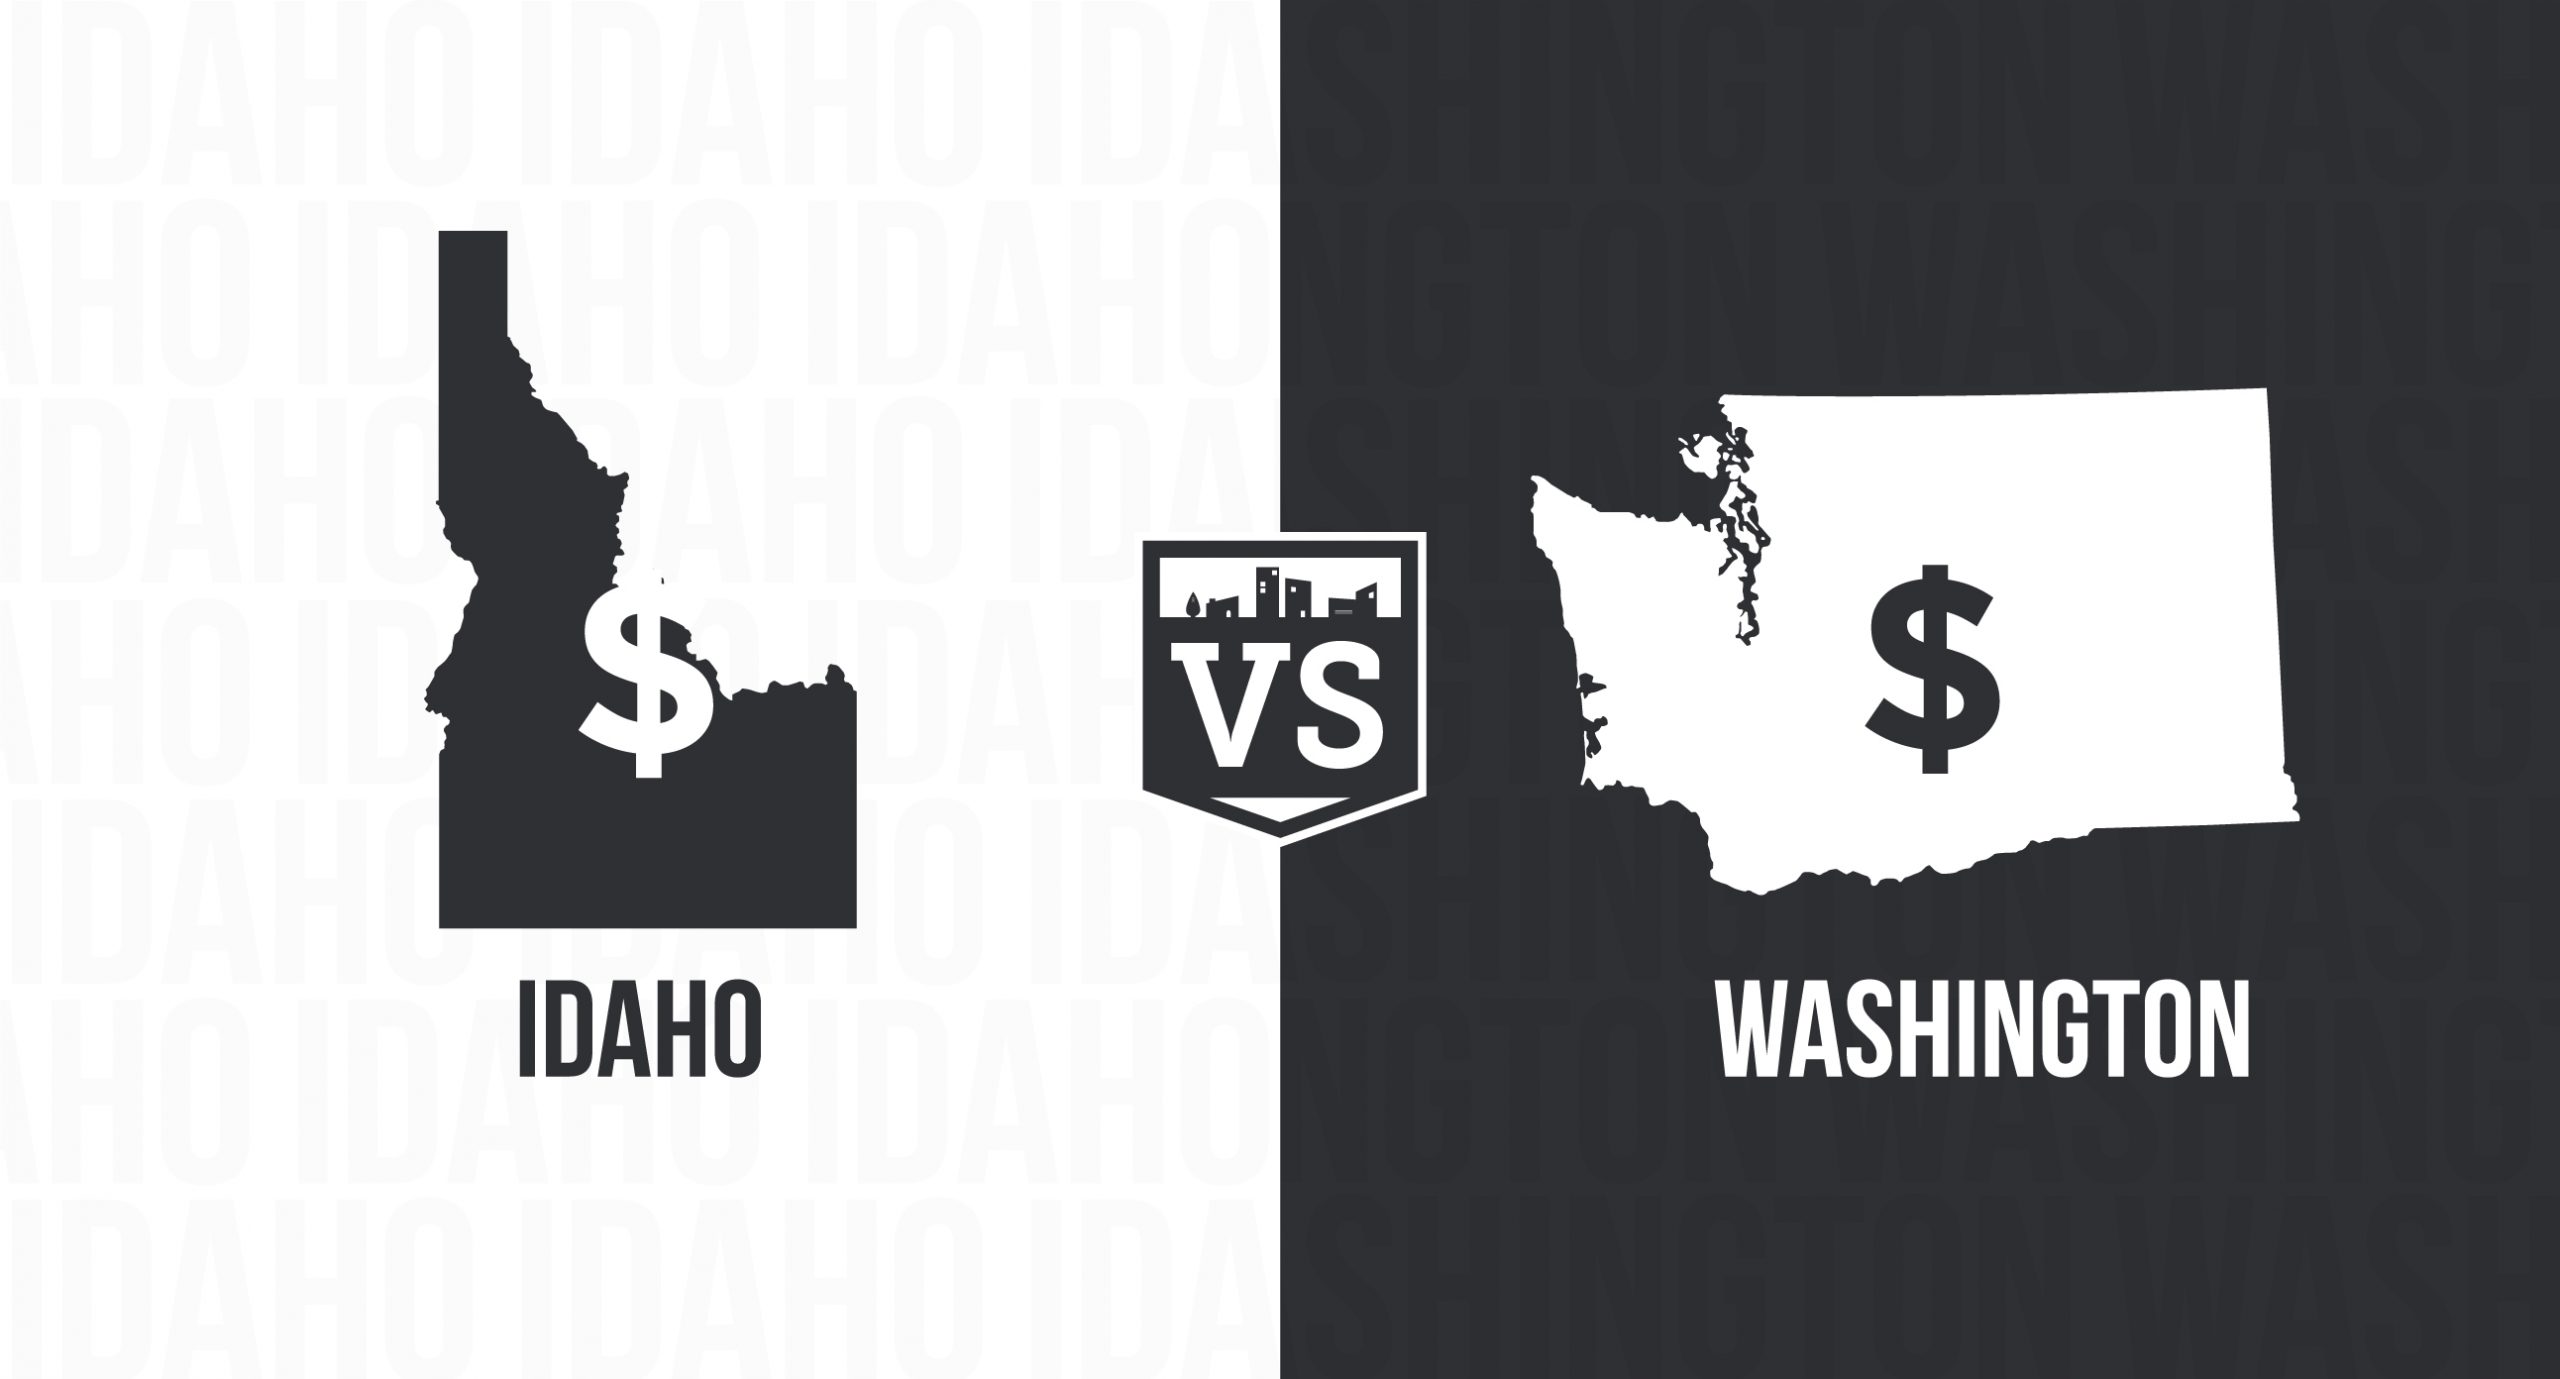 Cost of Living - Idaho vs Washington